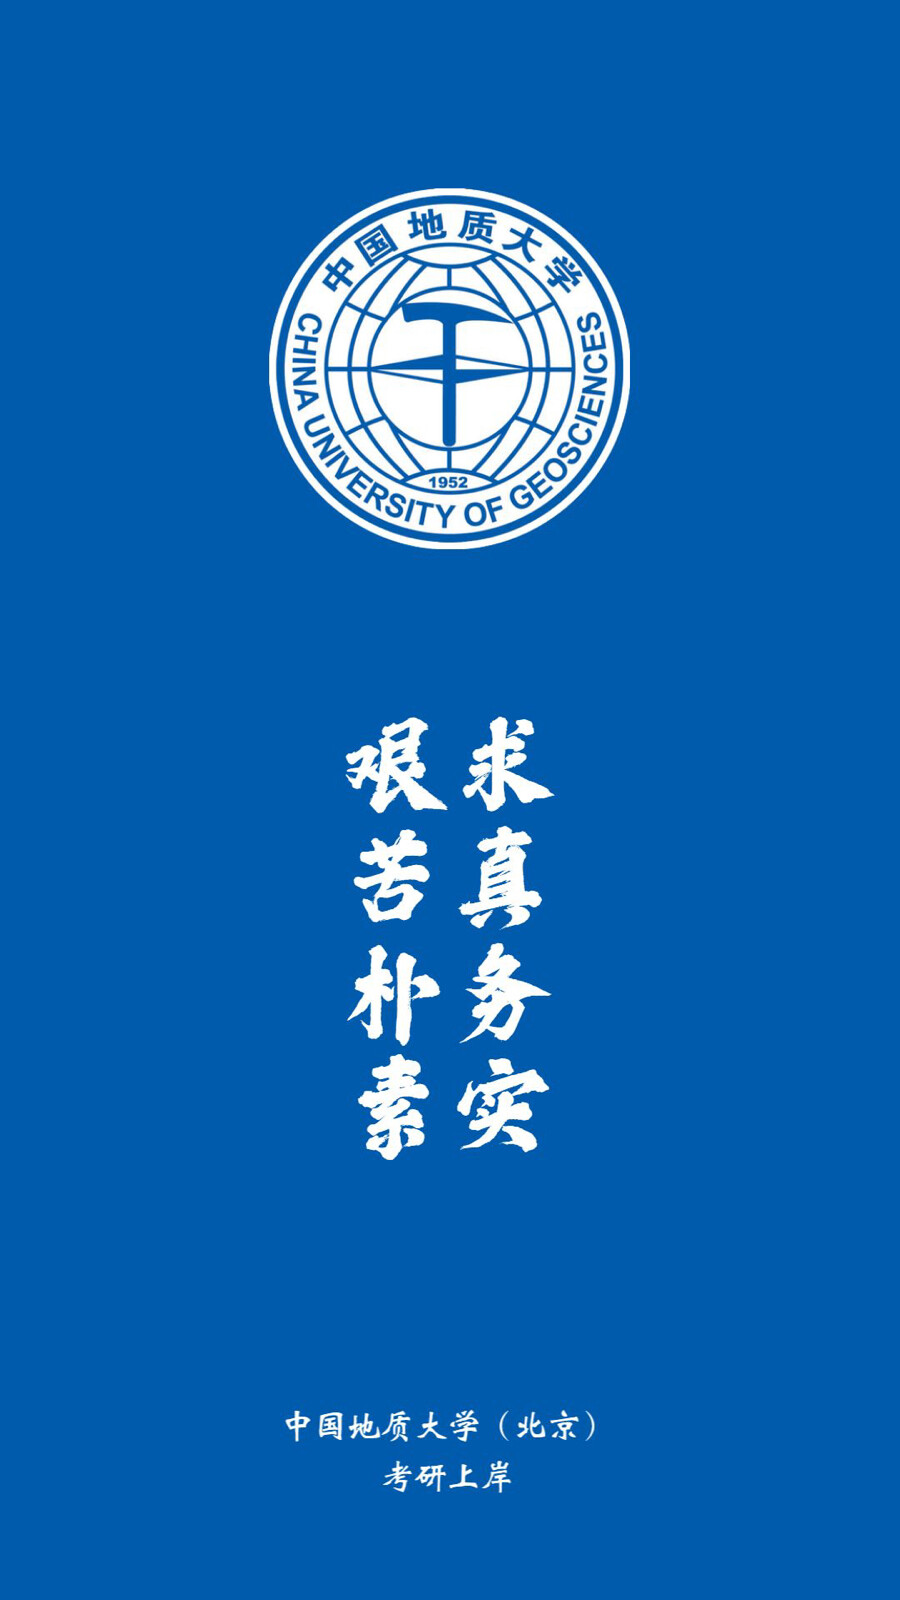 地大北京校徽图片